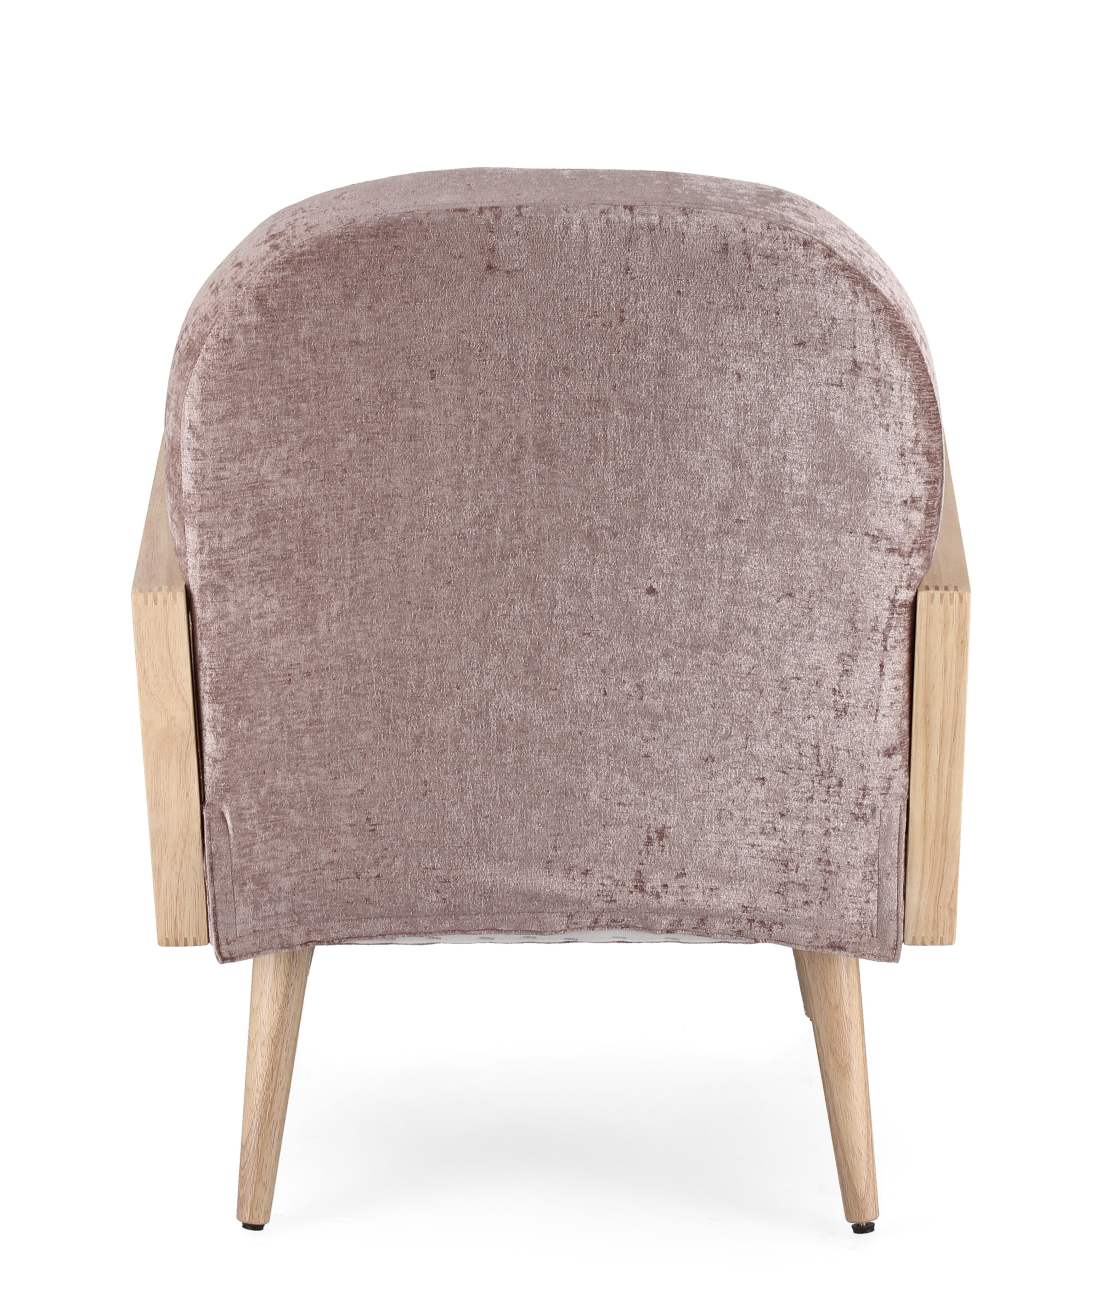 Der Sessel Dalida überzeugt mit seinem modernen Stil. Gefertigt wurde er aus einem Stoff-Bezug, welcher einen Altrosa  Farbton besitzt. Das Gestell ist aus Kautschukholz und hat eine natürliche Farbe. Der Sessel verfügt über eine Armlehne.